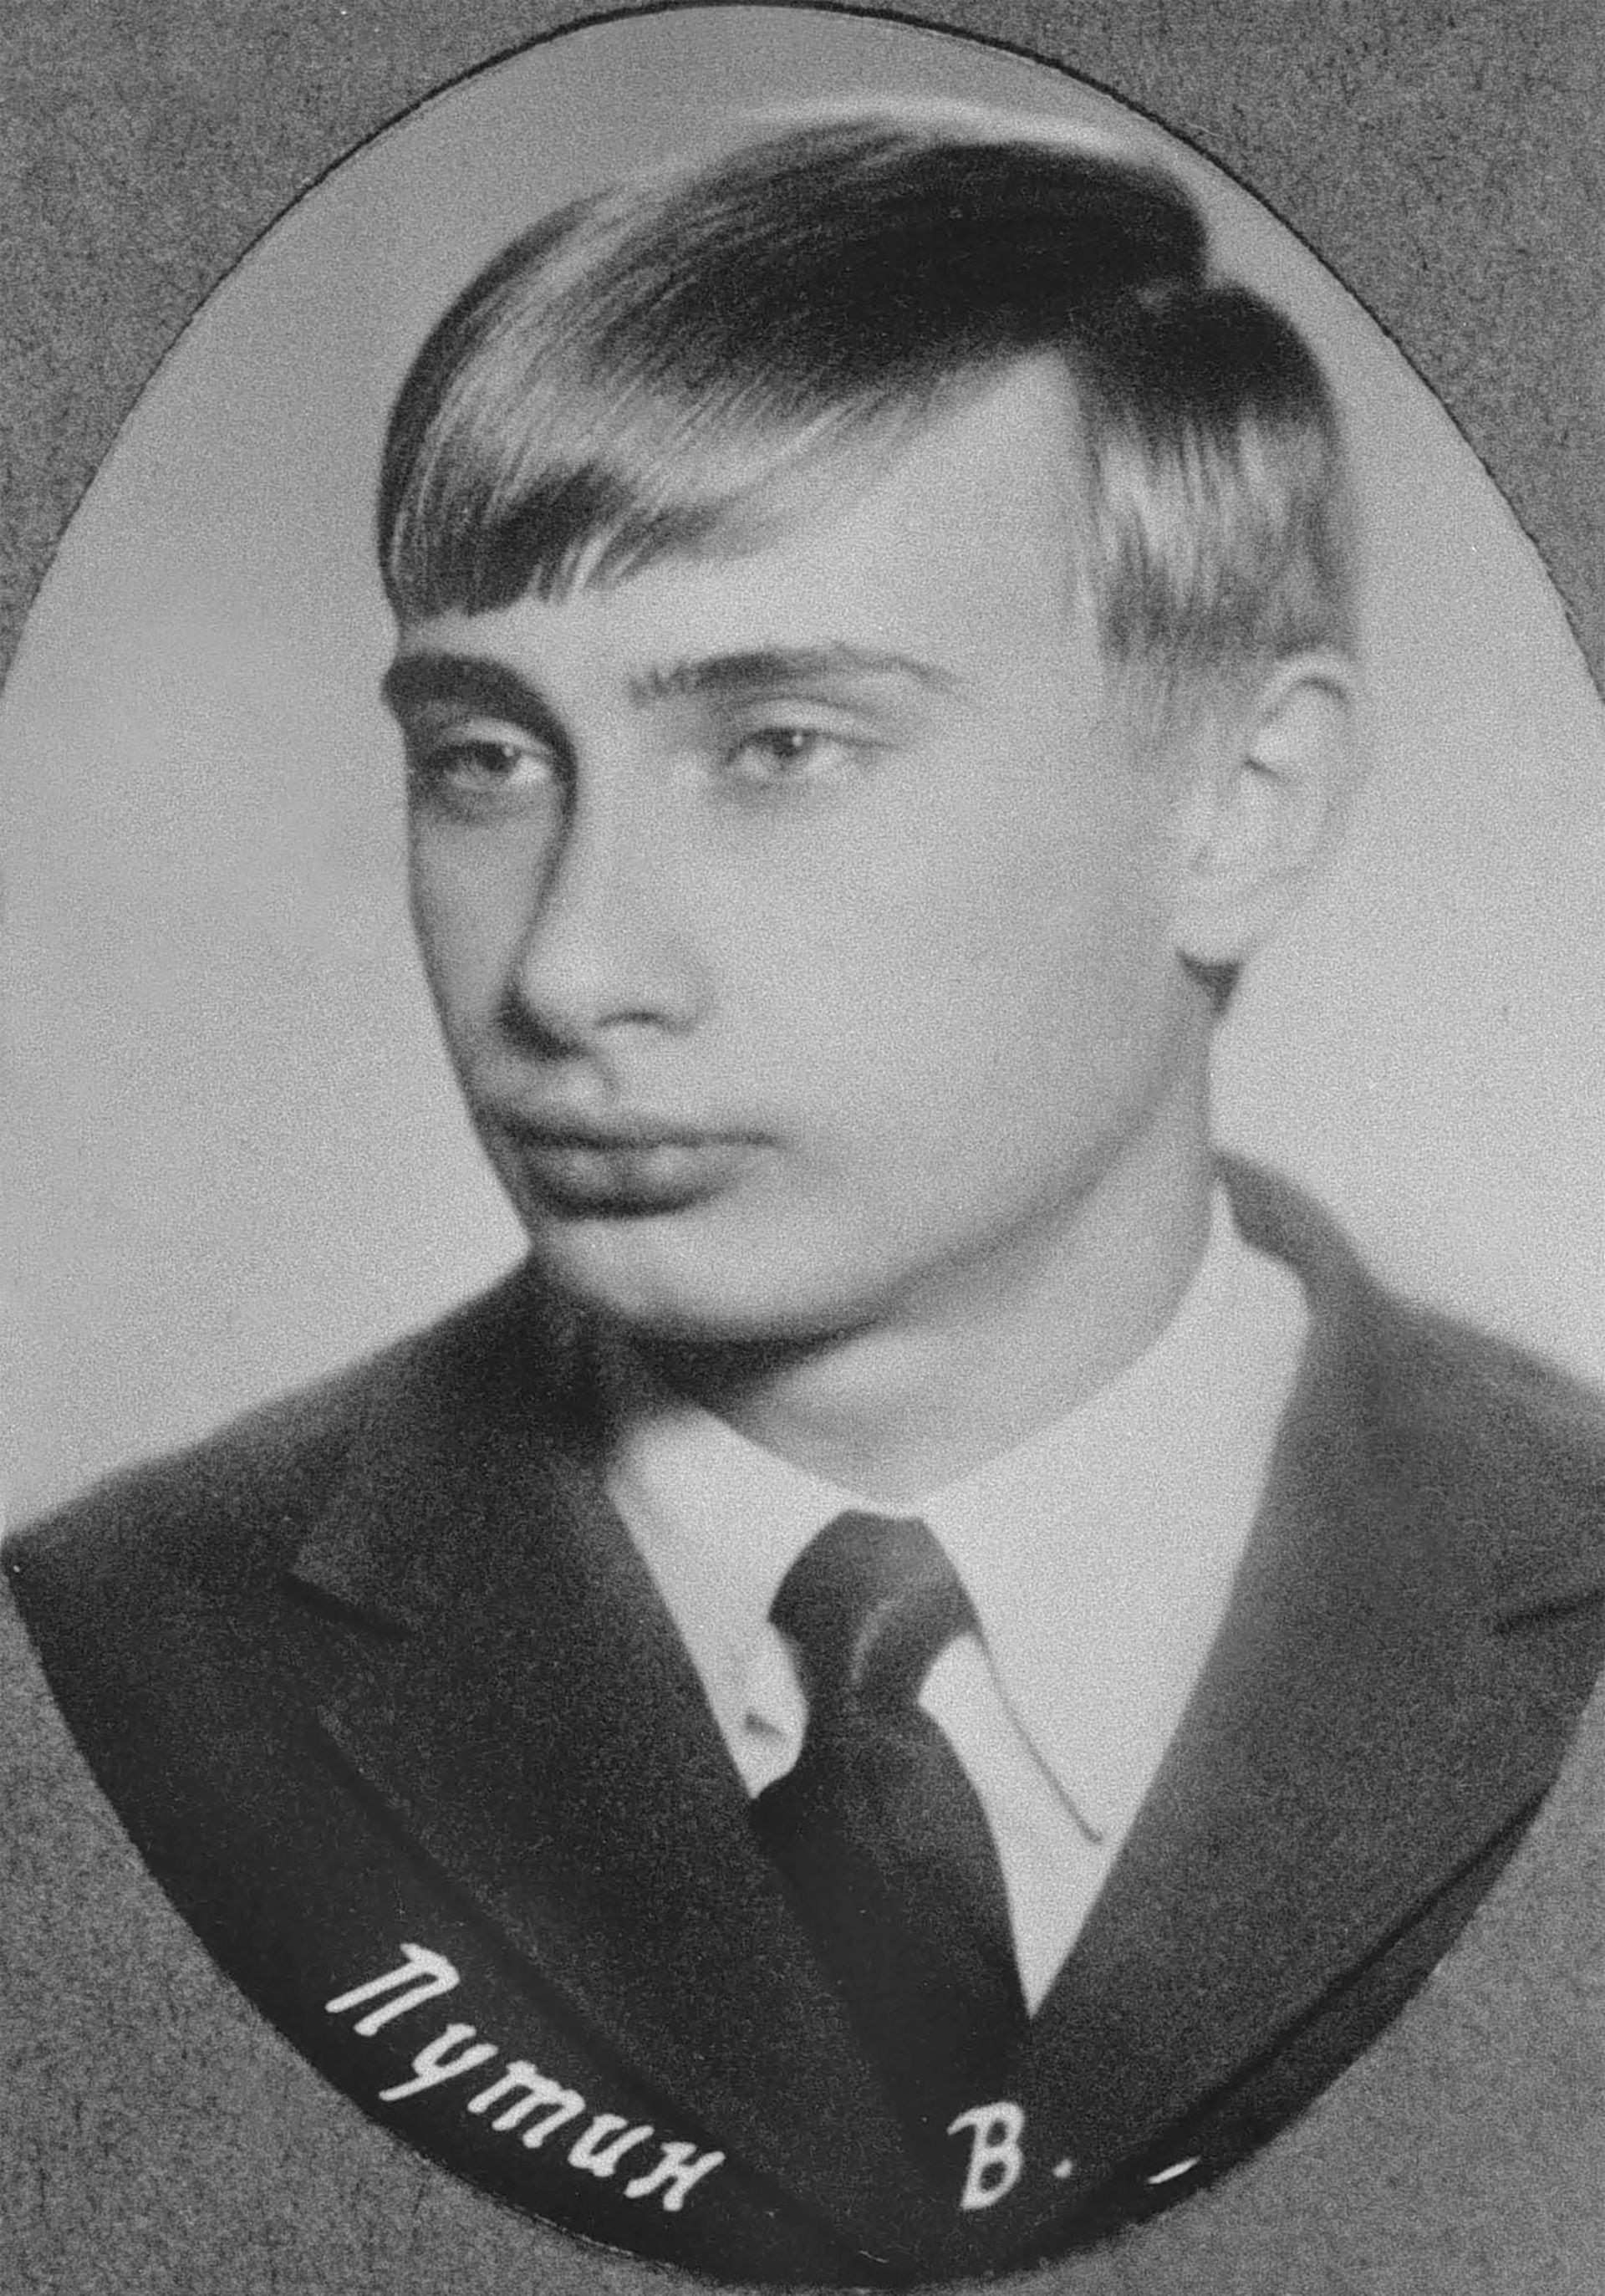 Vladimir Putin en una foto del álbum escolar en San Petesburgo, en 1970 (Photo by Laski Diffusion)